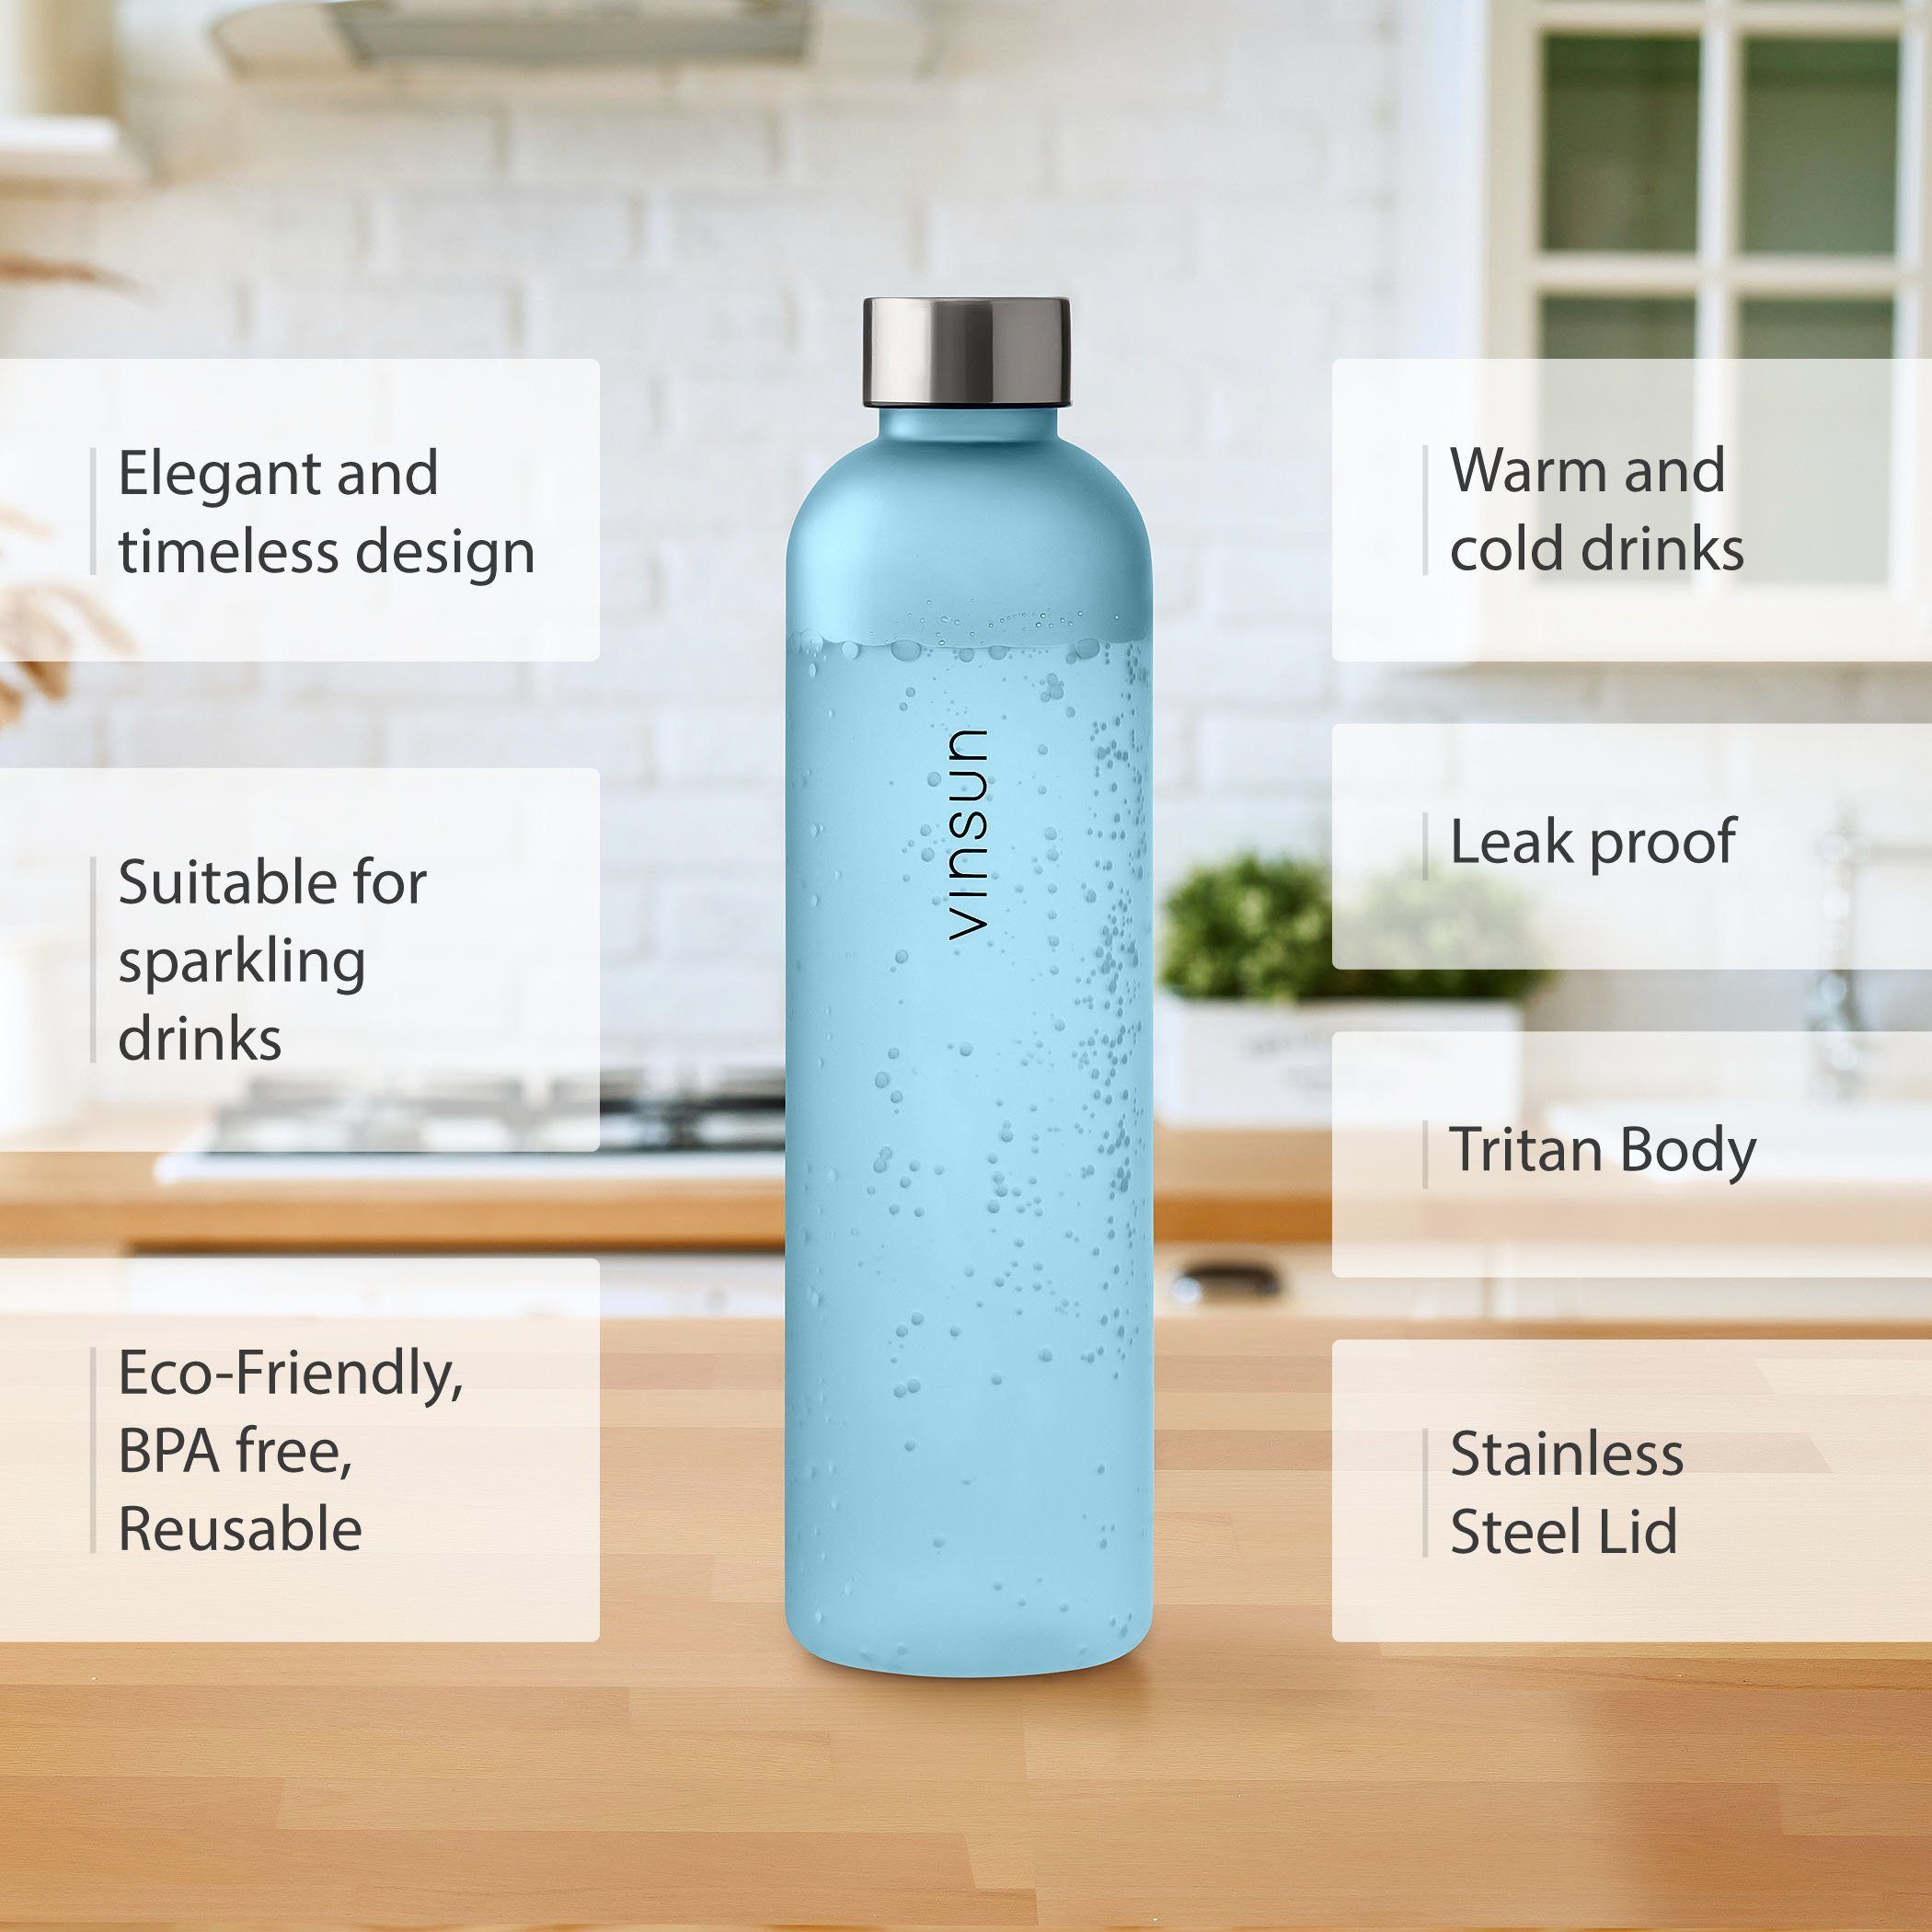 Vinsun Trinkflasche Trinkflasche 650ml, Kohlensäure und auslaufsicher, BPA Geschmacksneutral, Tritan, Geruchs- geeignet, frei, bruchsicher, auslaufsicher Blau